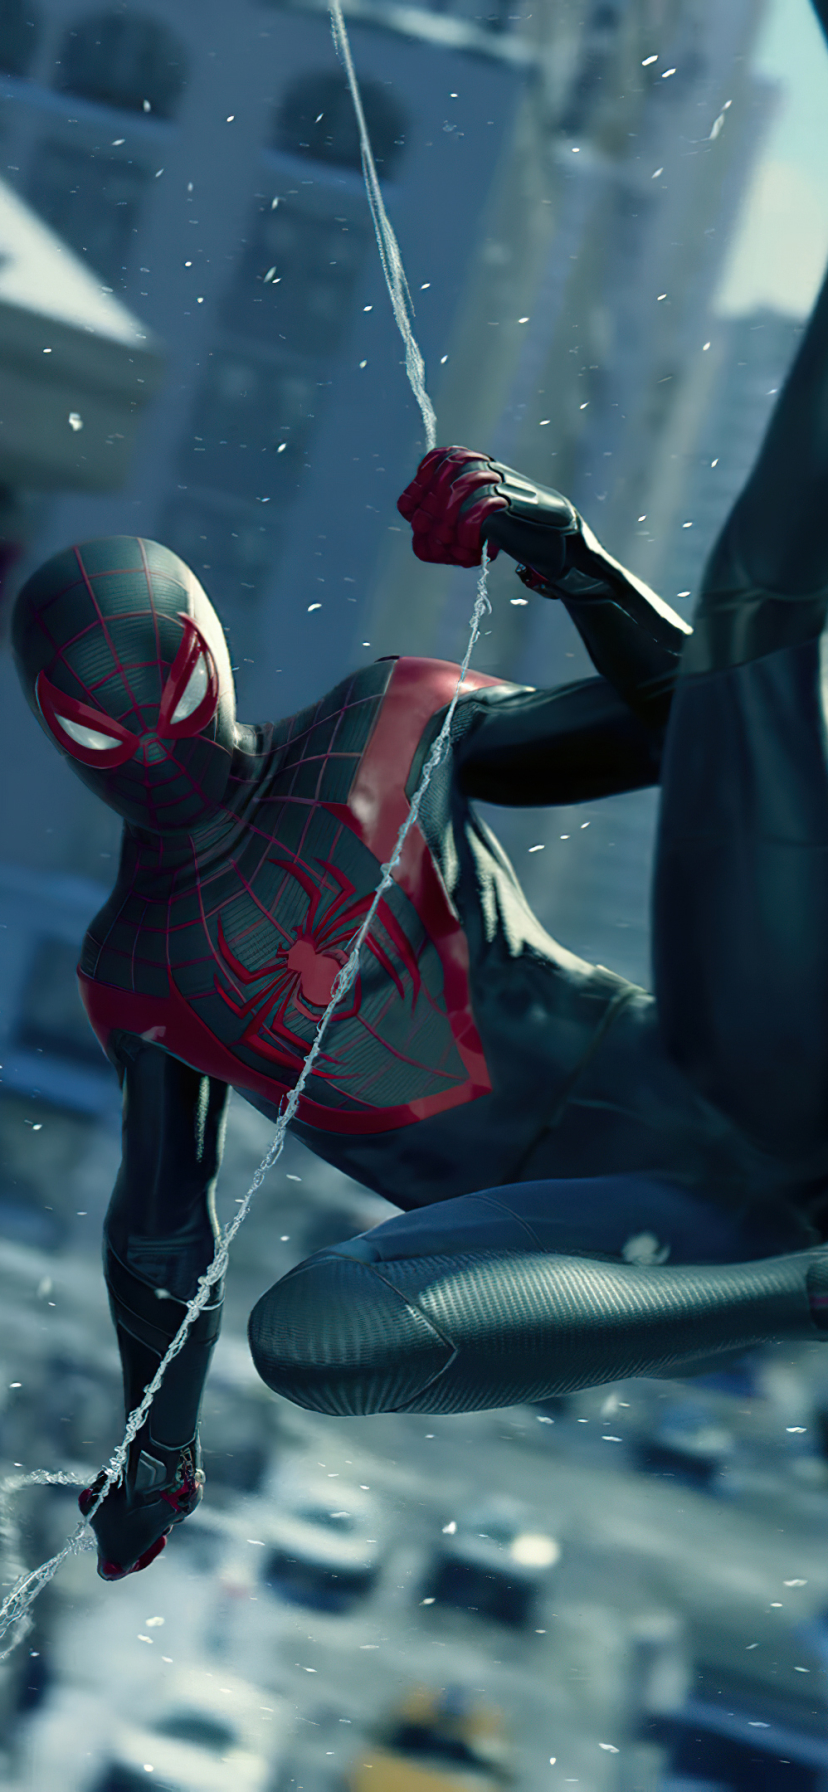 Descarga gratuita de fondo de pantalla para móvil de Videojuego, Millas Morales, Spider Man De Marvel: Miles Morales.